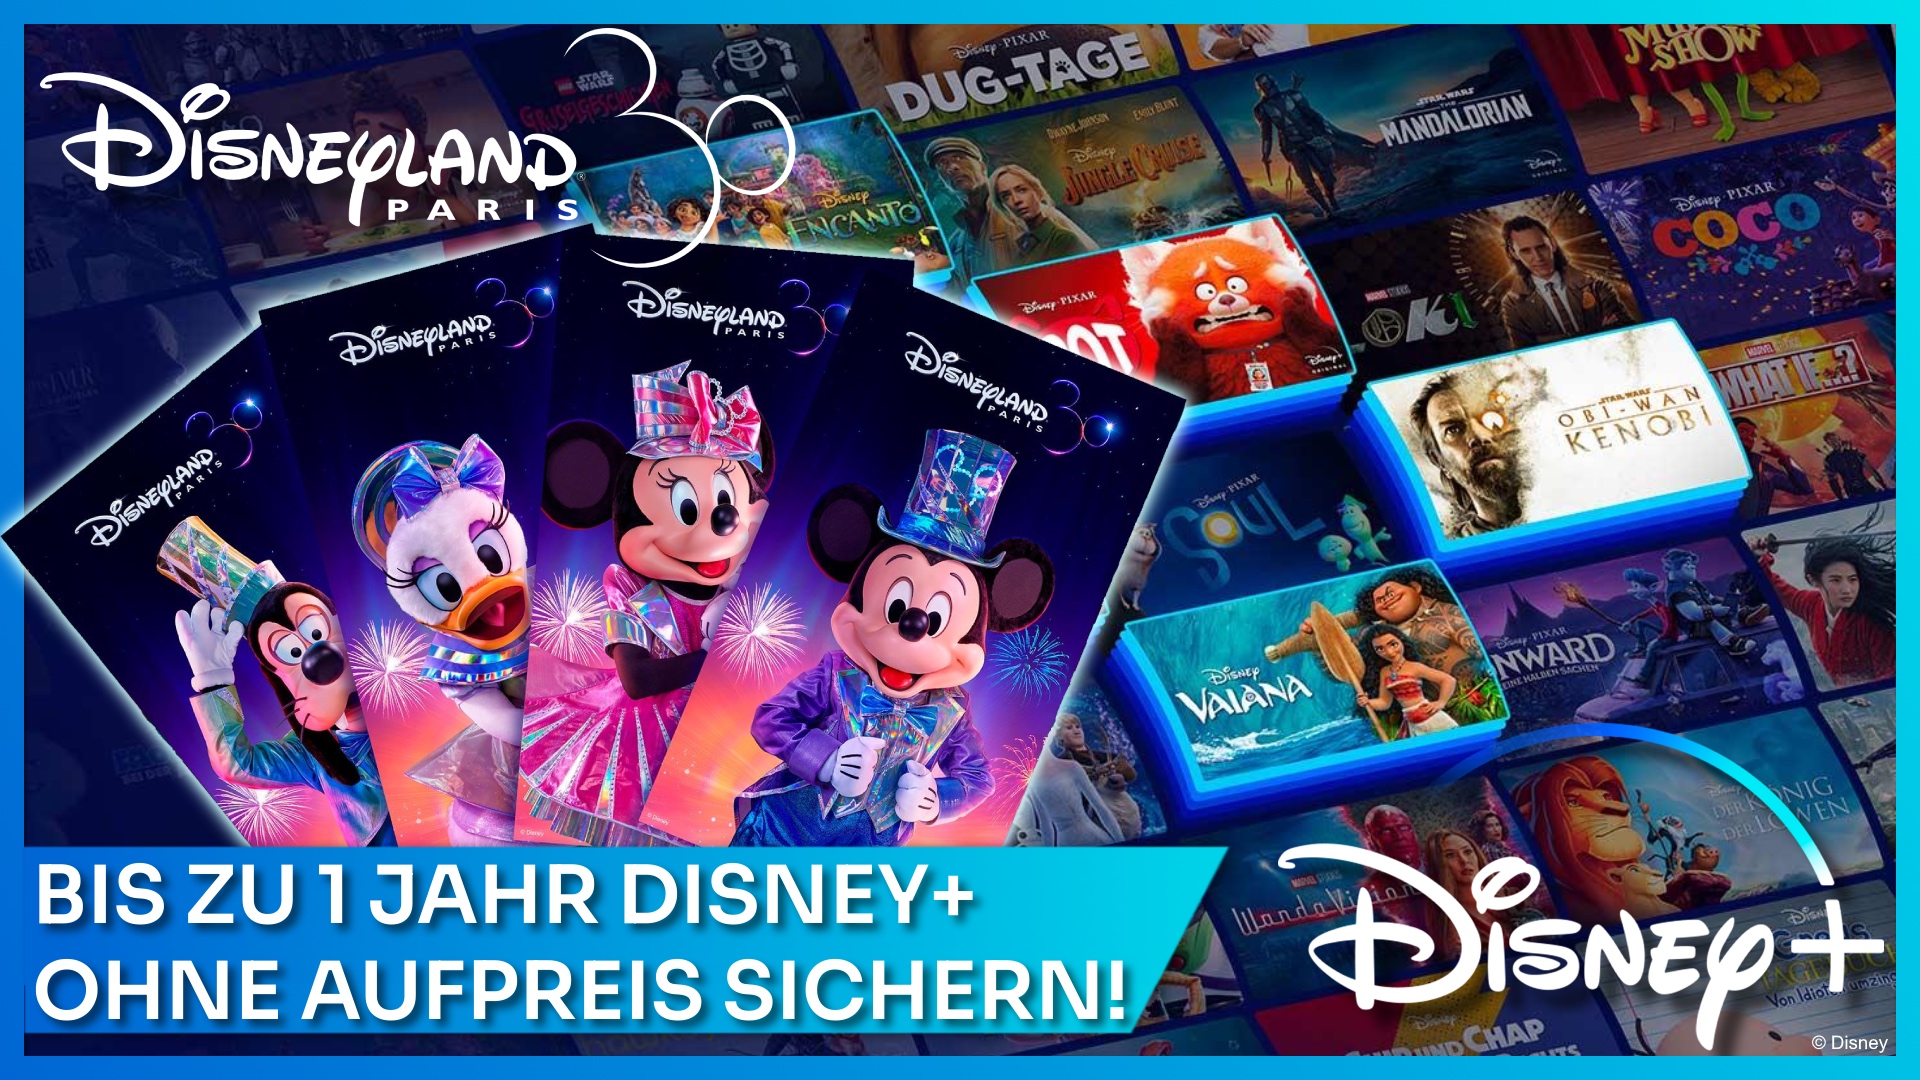 1 Jahr gratis Disney+ Abo bei Disneyland Paris Buchung sichern